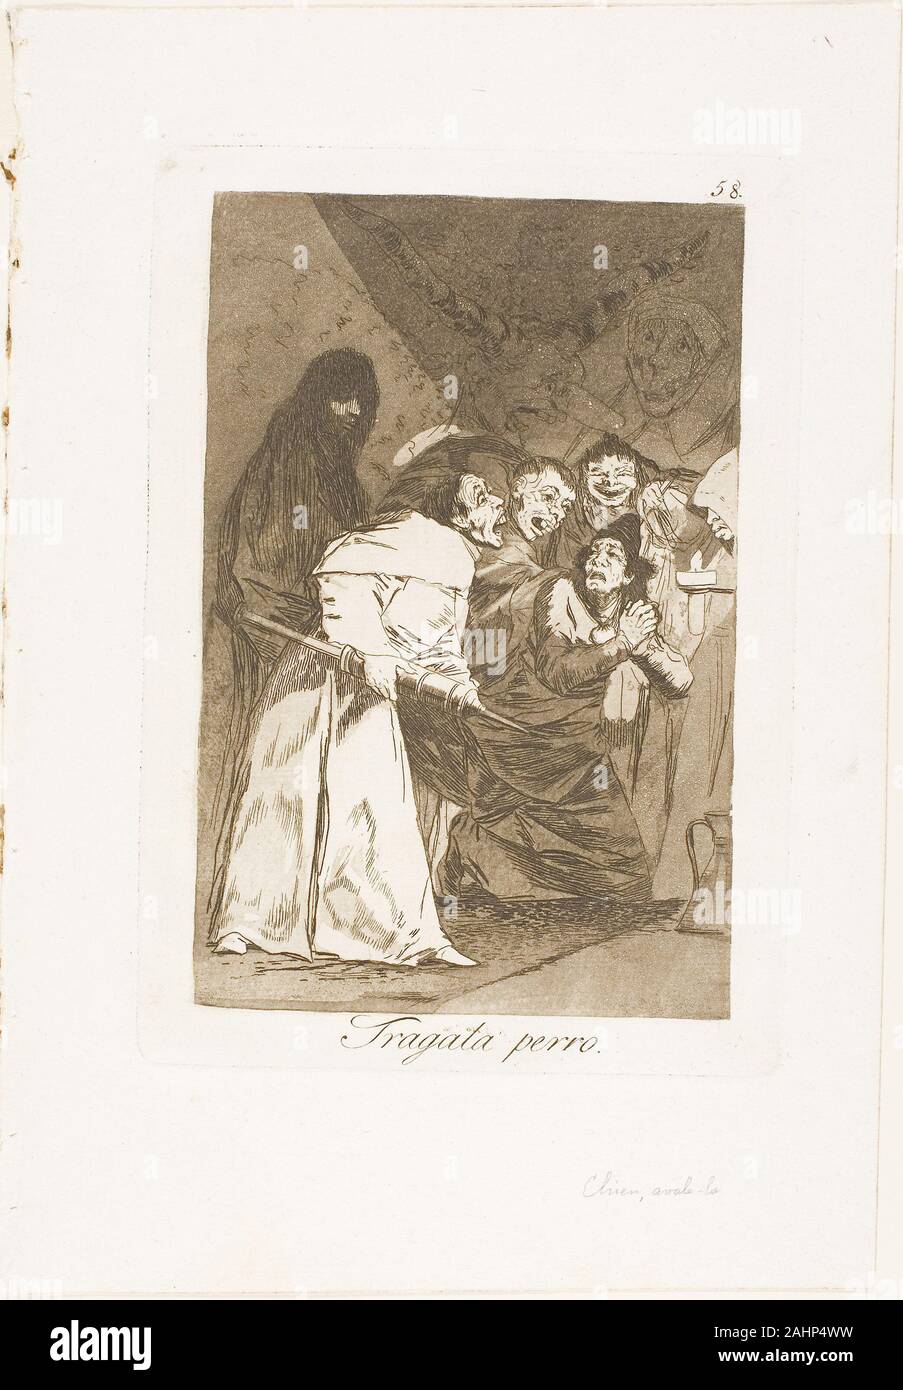 Francisco José de Goya y Lucientes. L'avaler, le chien, la plaque 58 de Los Caprichos. 1797-1799. L'Espagne. Eau-forte et aquatinte sur papier vergé ivoire Banque D'Images